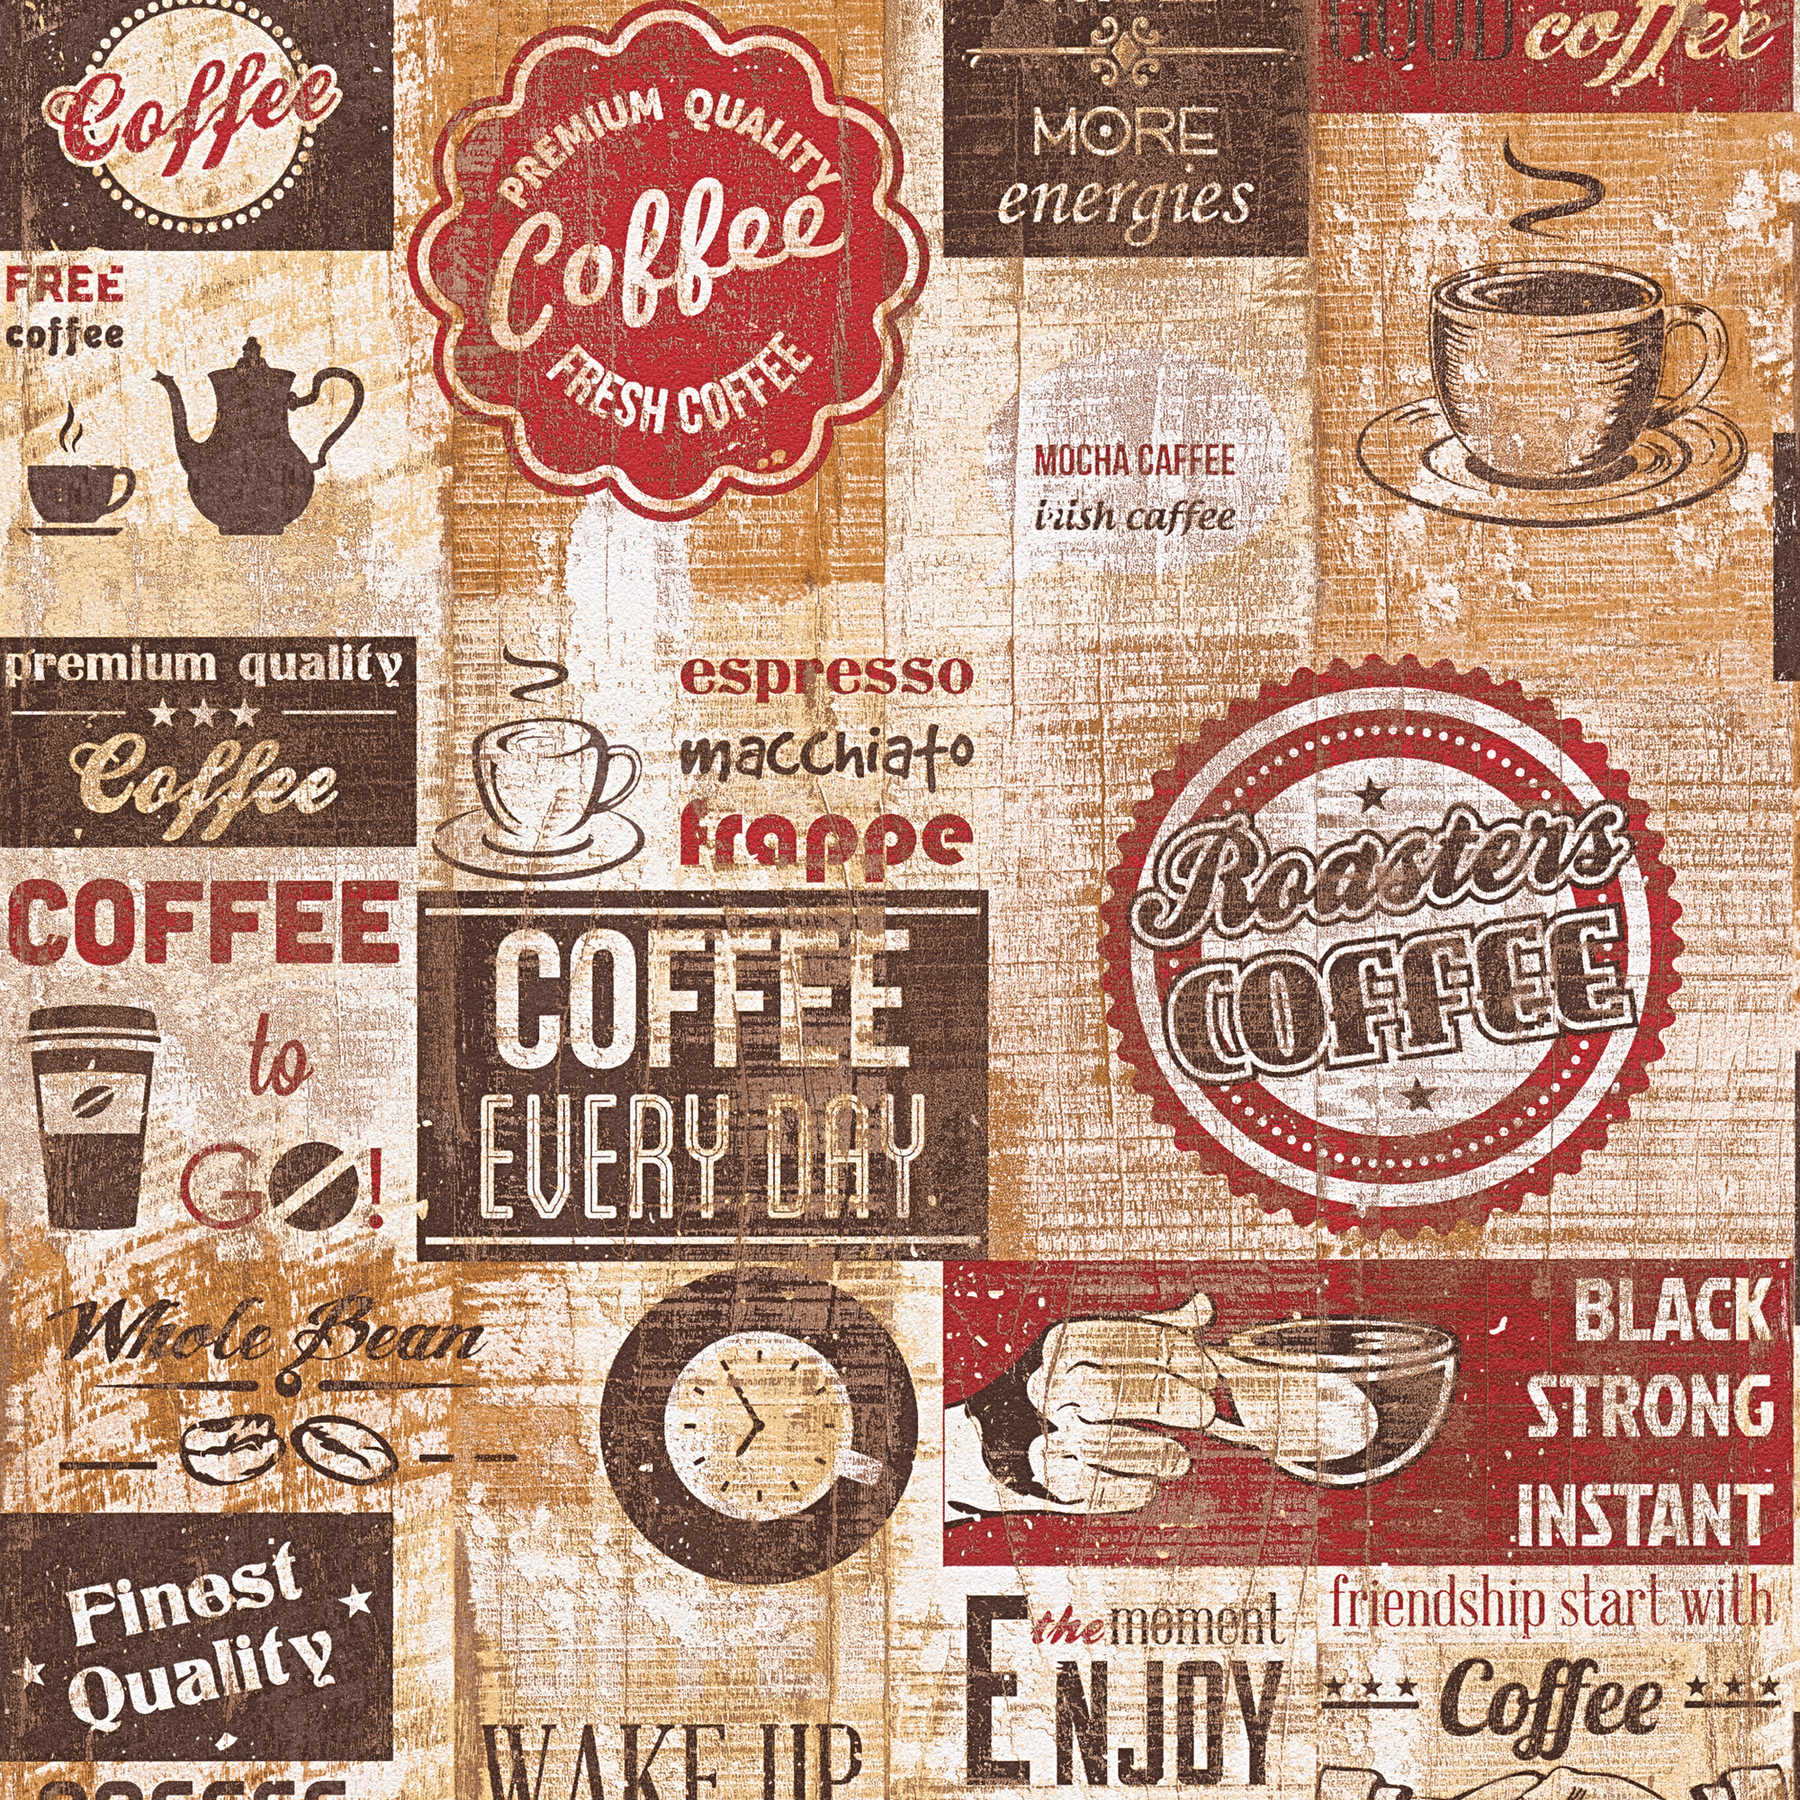         Papel pintado con motivo de café, estilo Diner americano - Marrón, Rojo
    